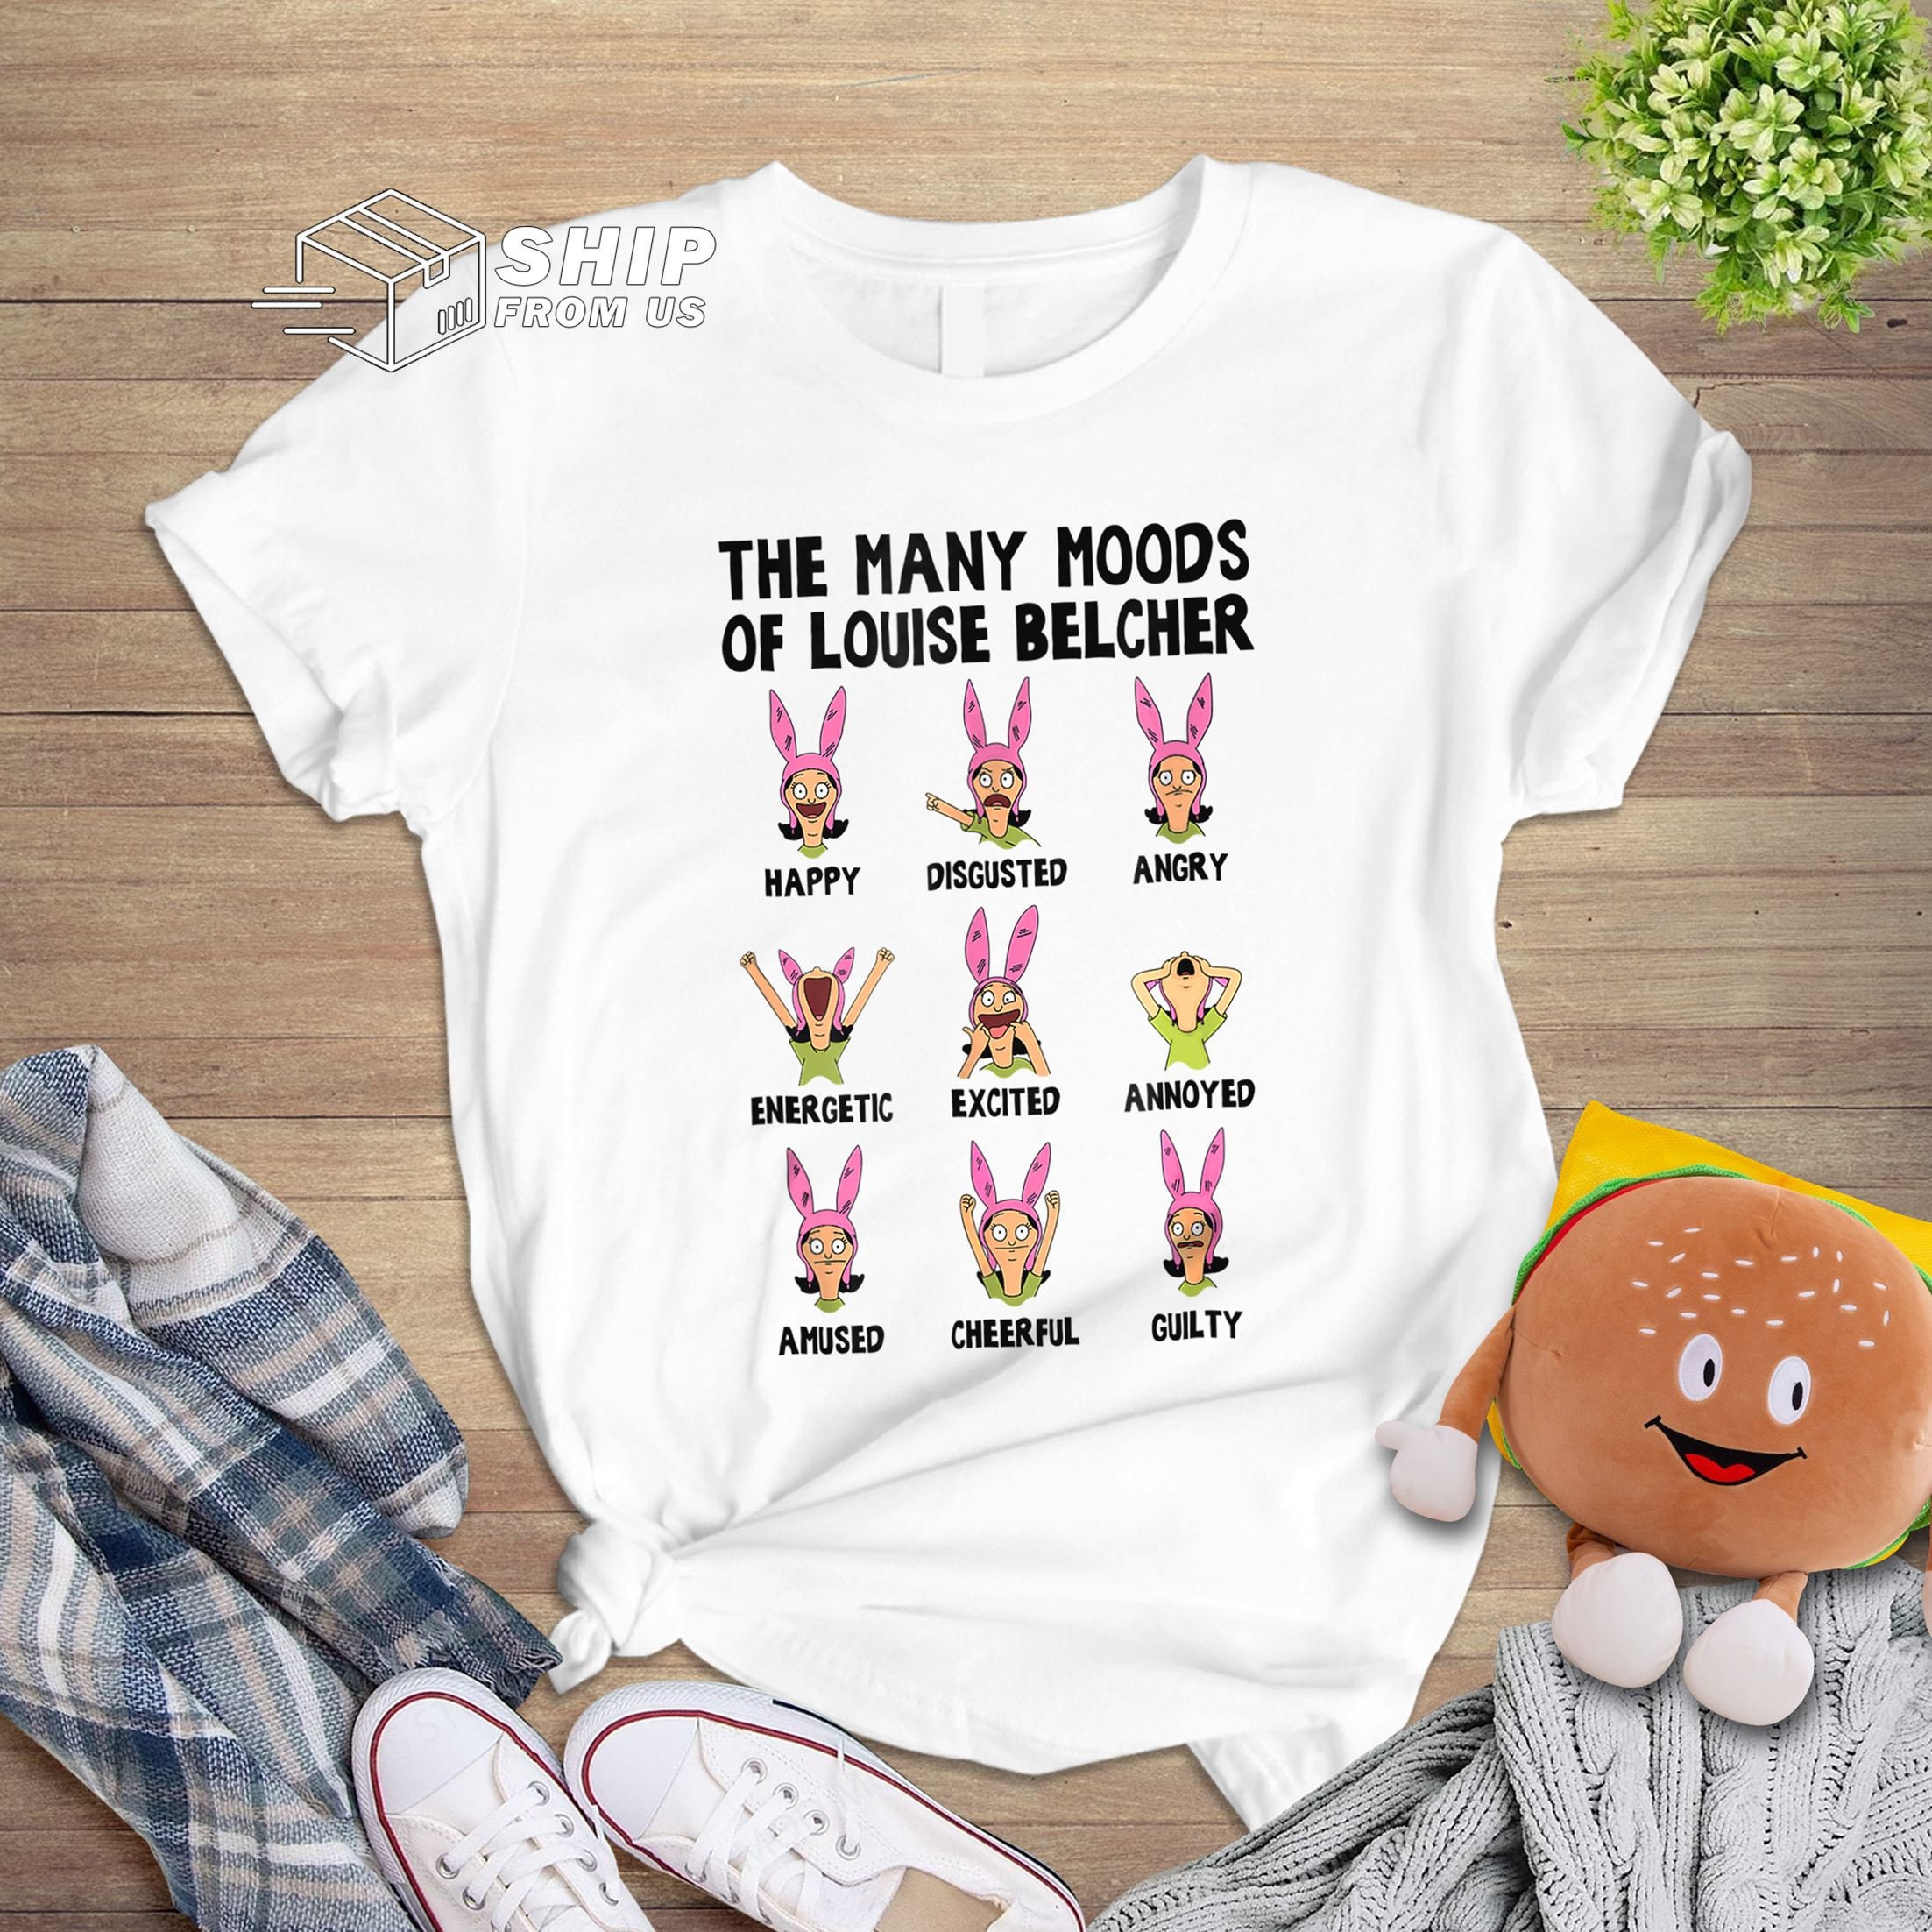 Louise Belcher Halloween Hat Kids T-Shirt for Sale by cutiekoala